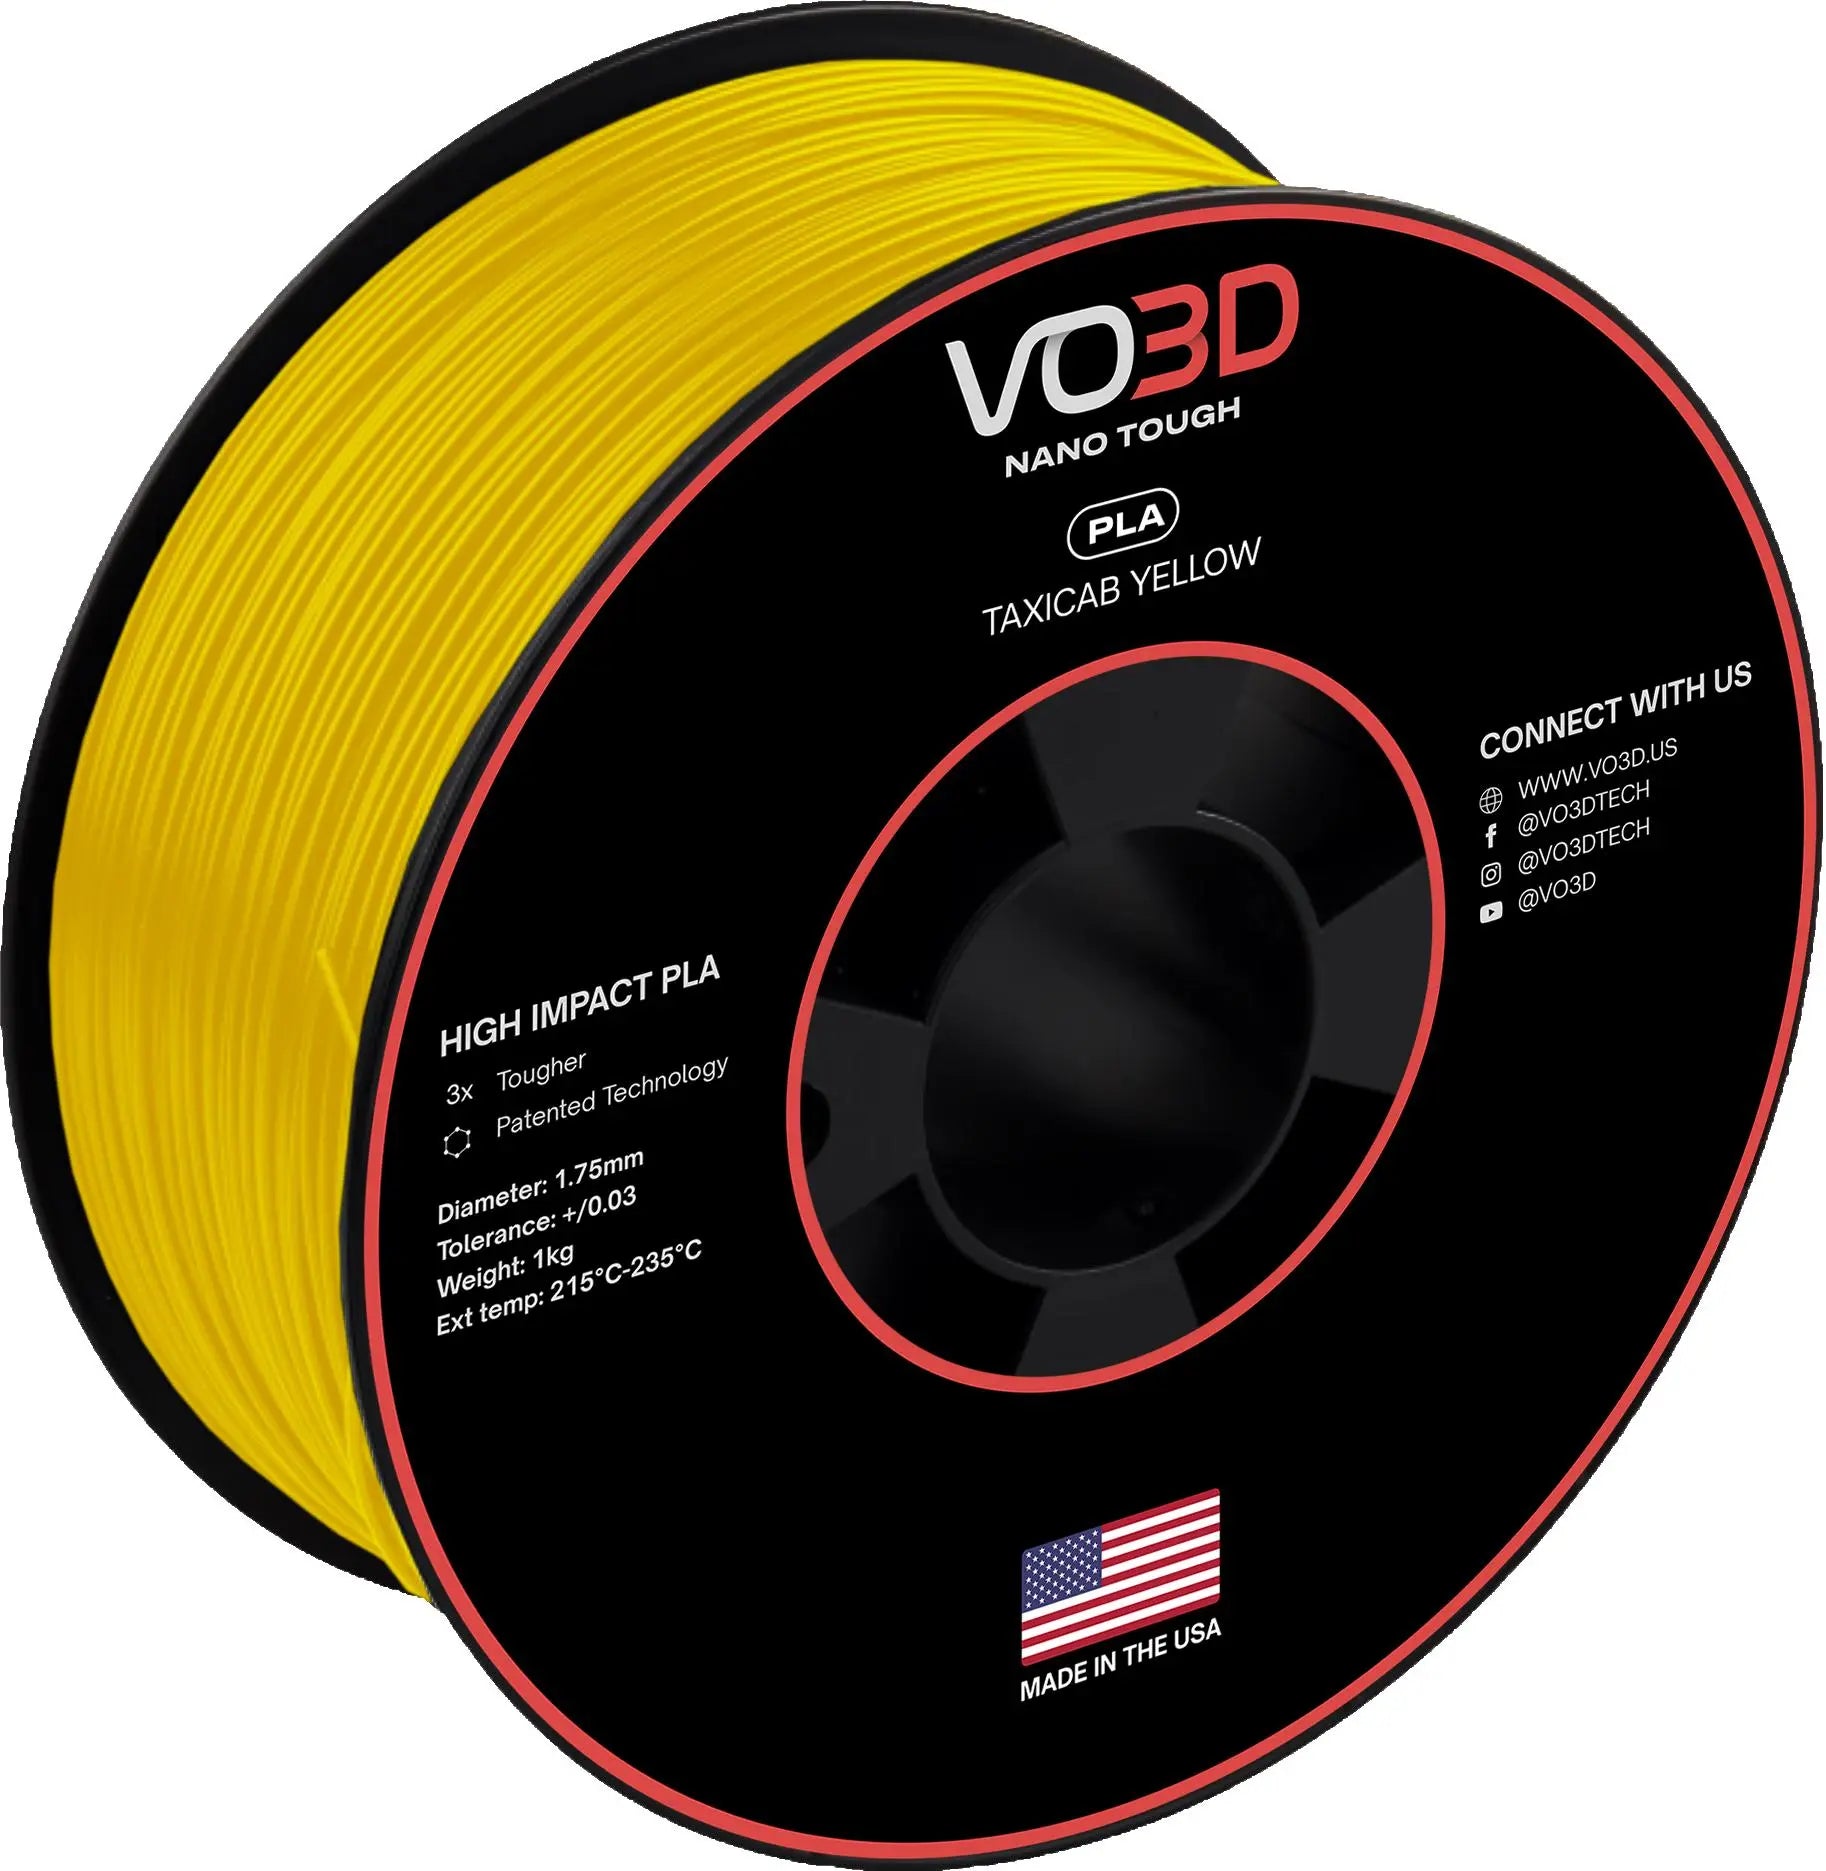 VO3D High Impact PLA coex3d